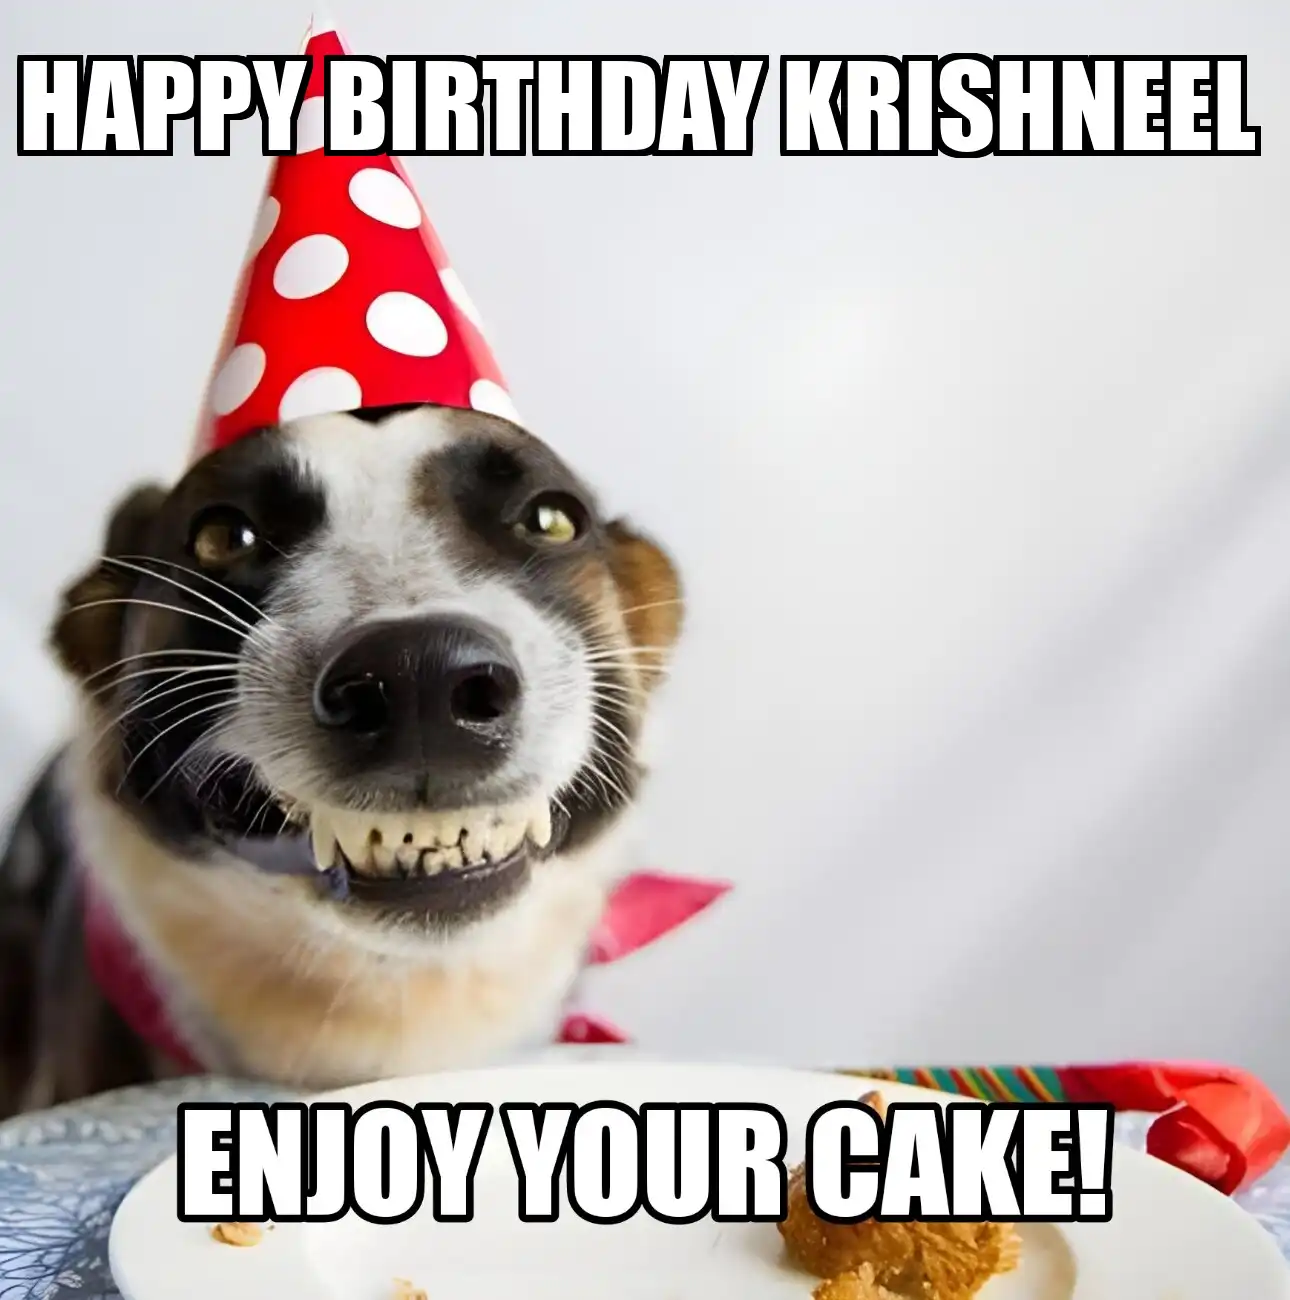 Happy Birthday Krishneel Enjoy Your Cake Dog Meme